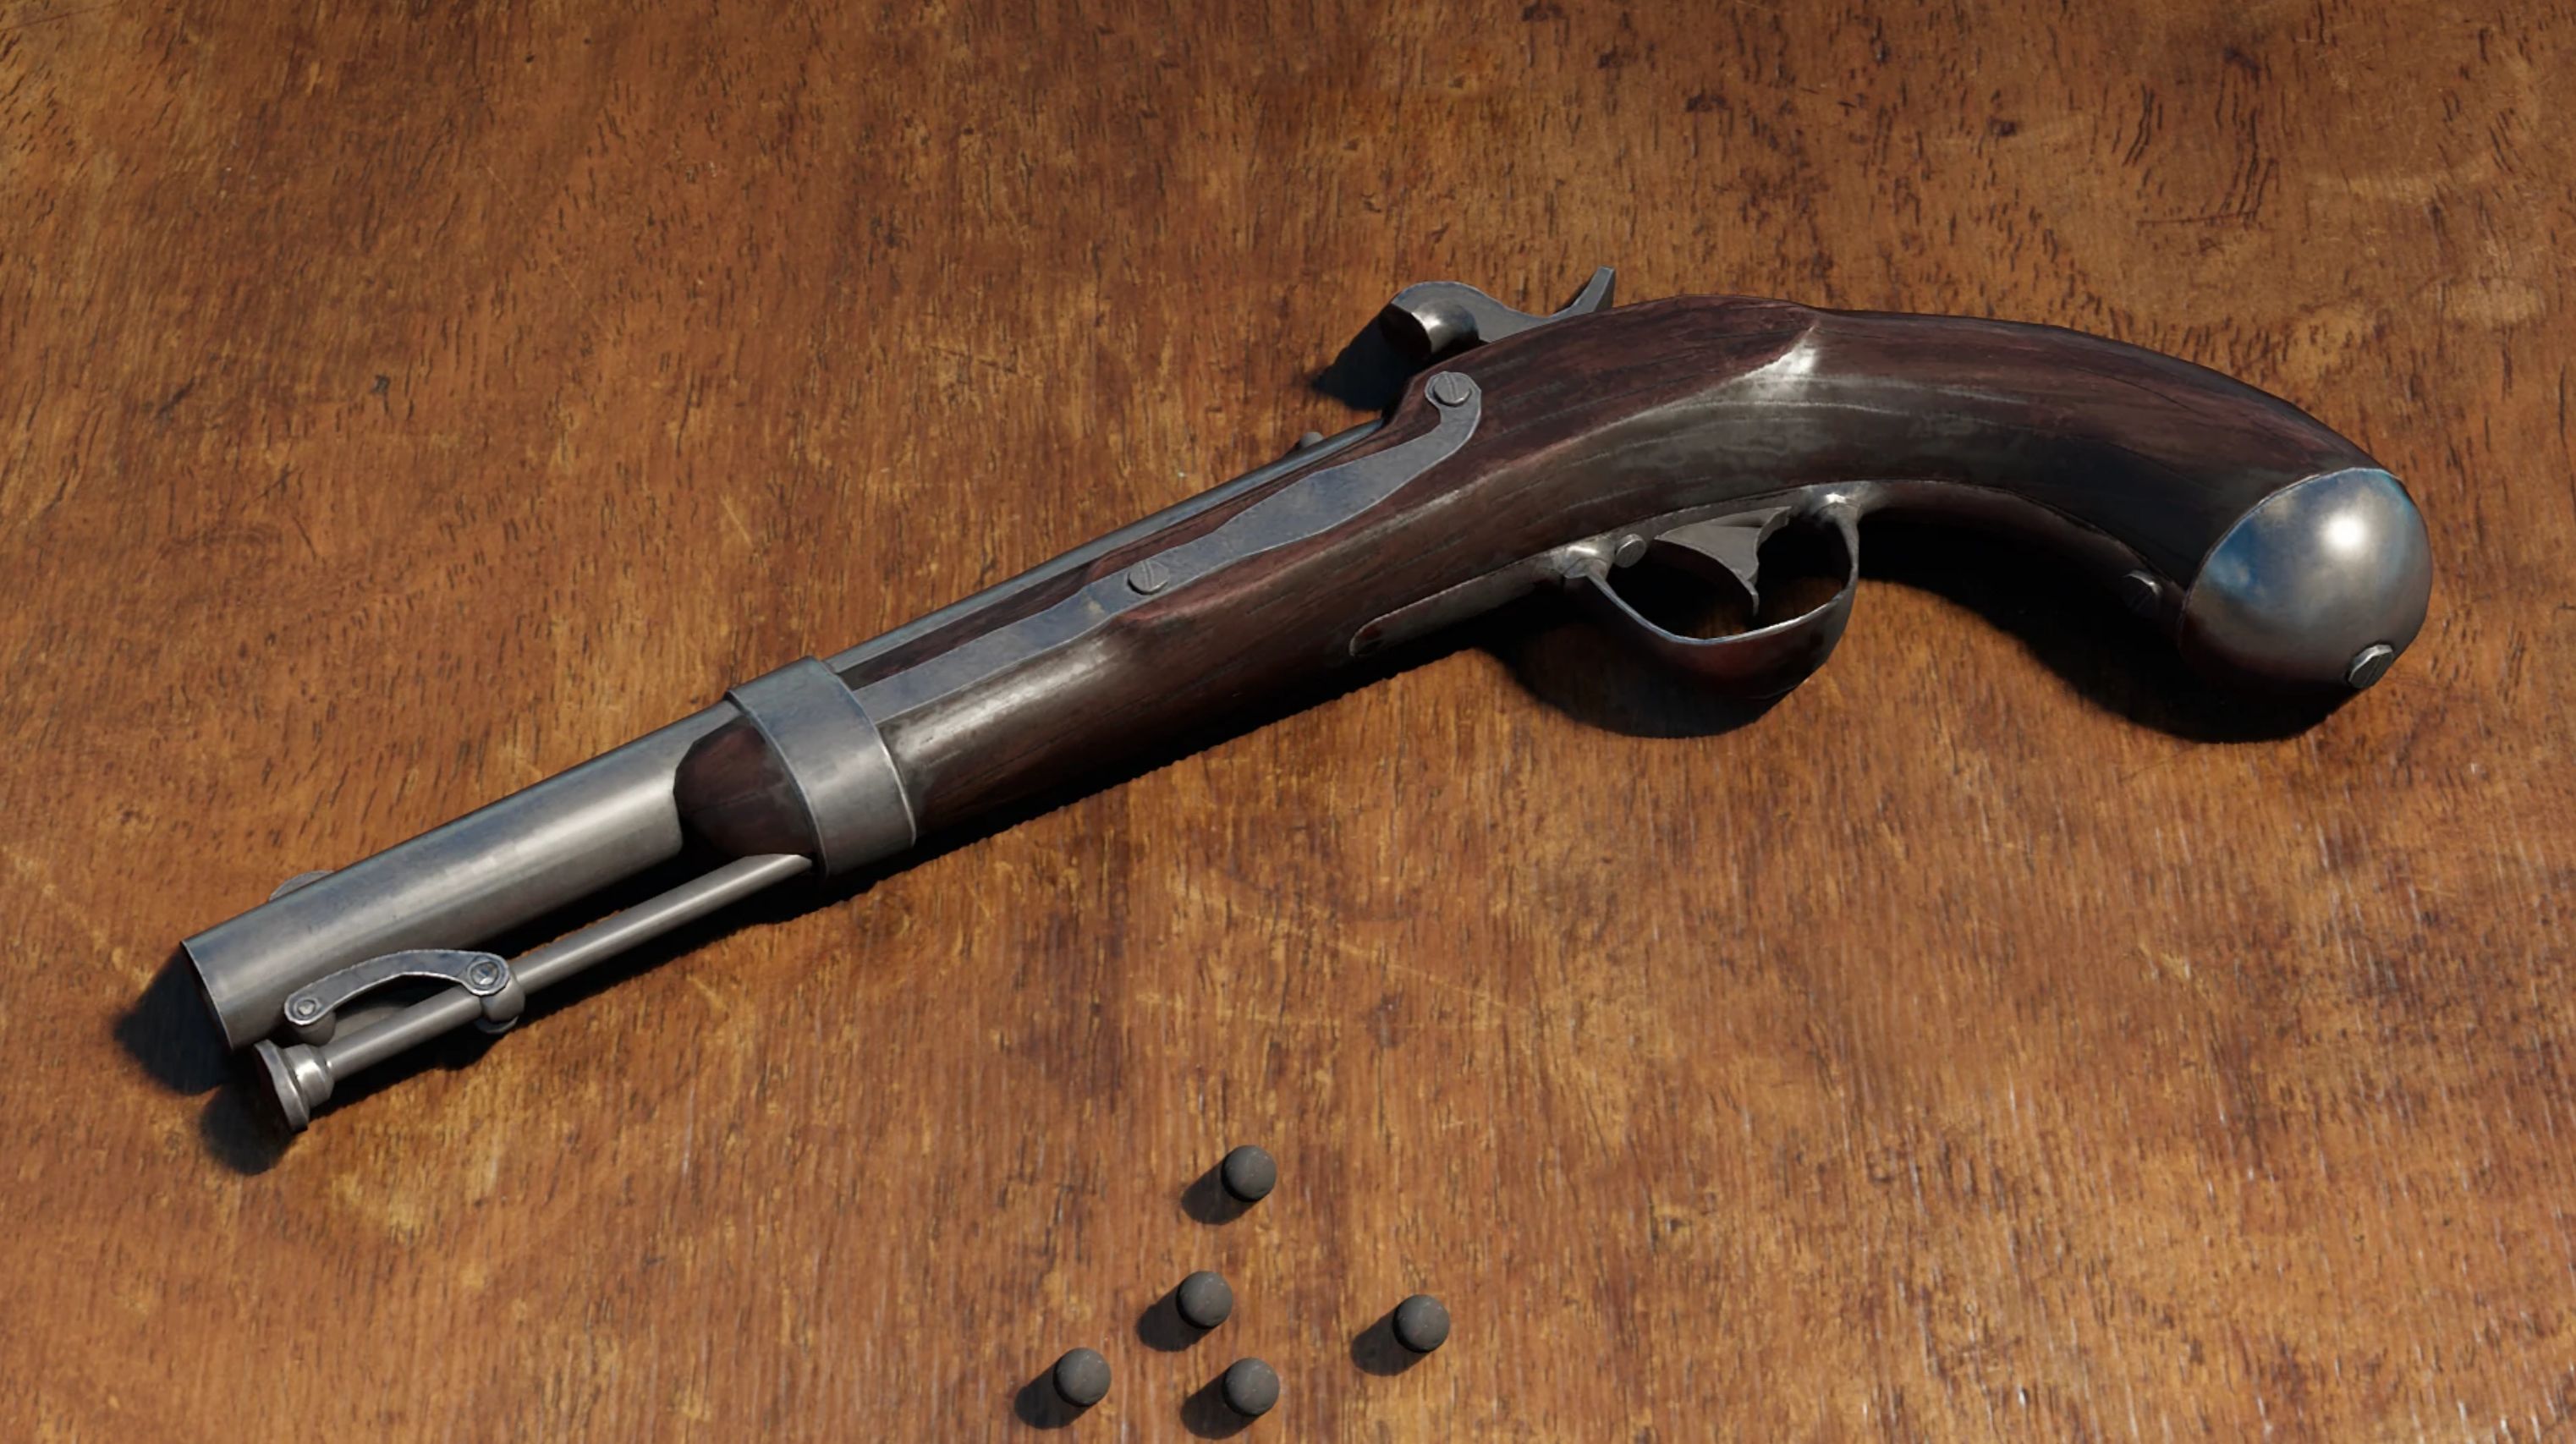 1836 Flintlock Pistol - Red Dead Redemption 2 Mod